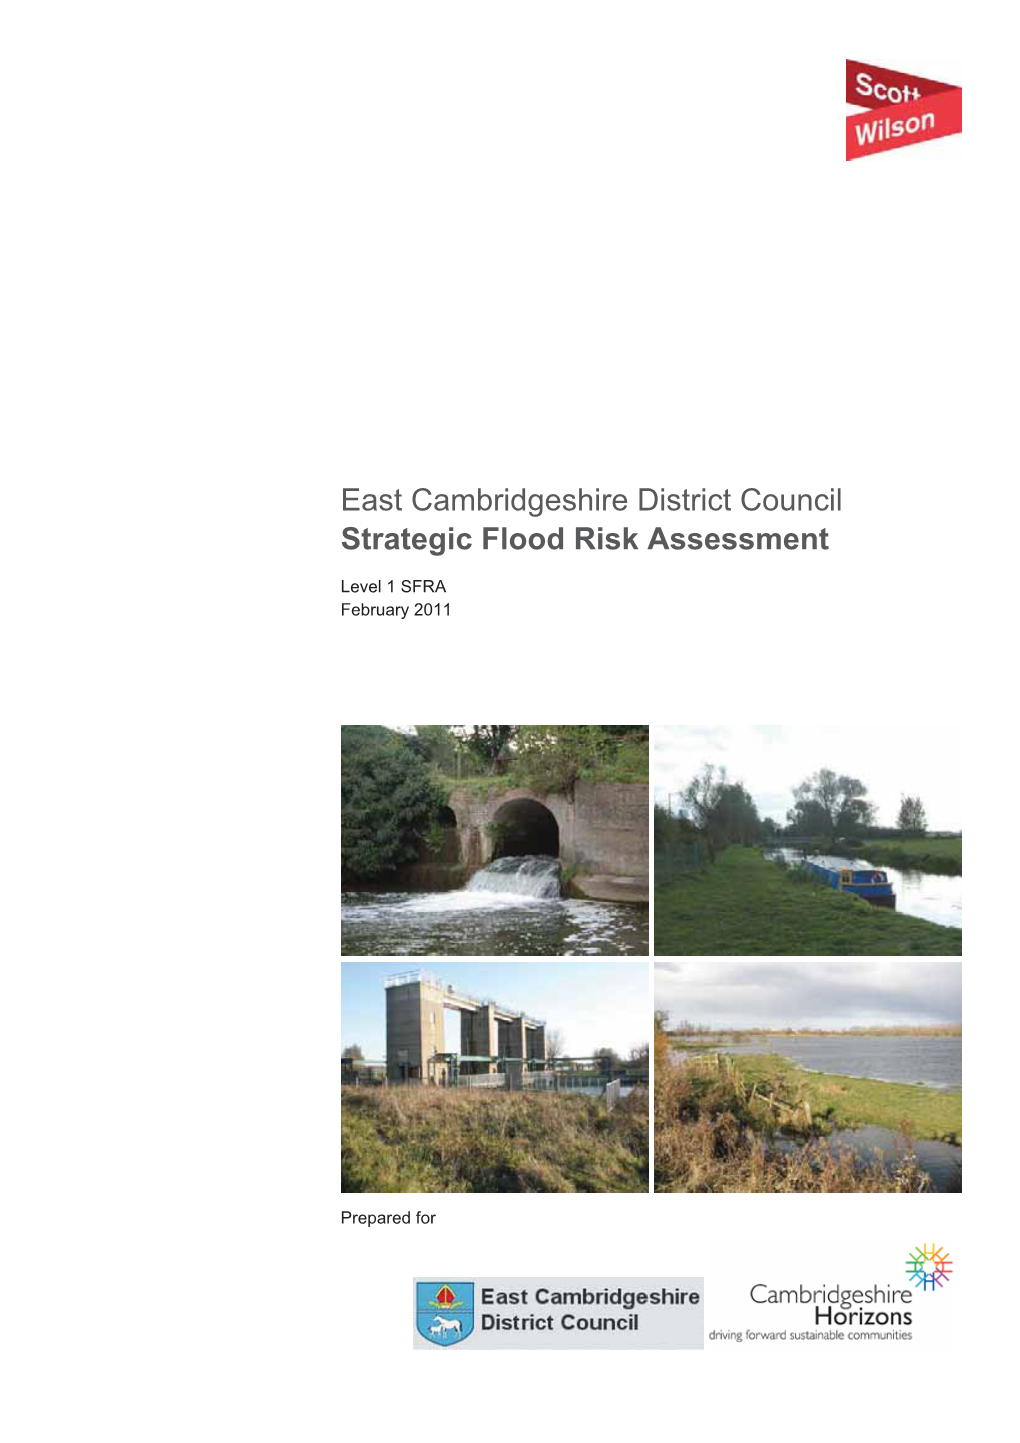 East Cambridgeshire District Council Strategic Flood Risk Assessment